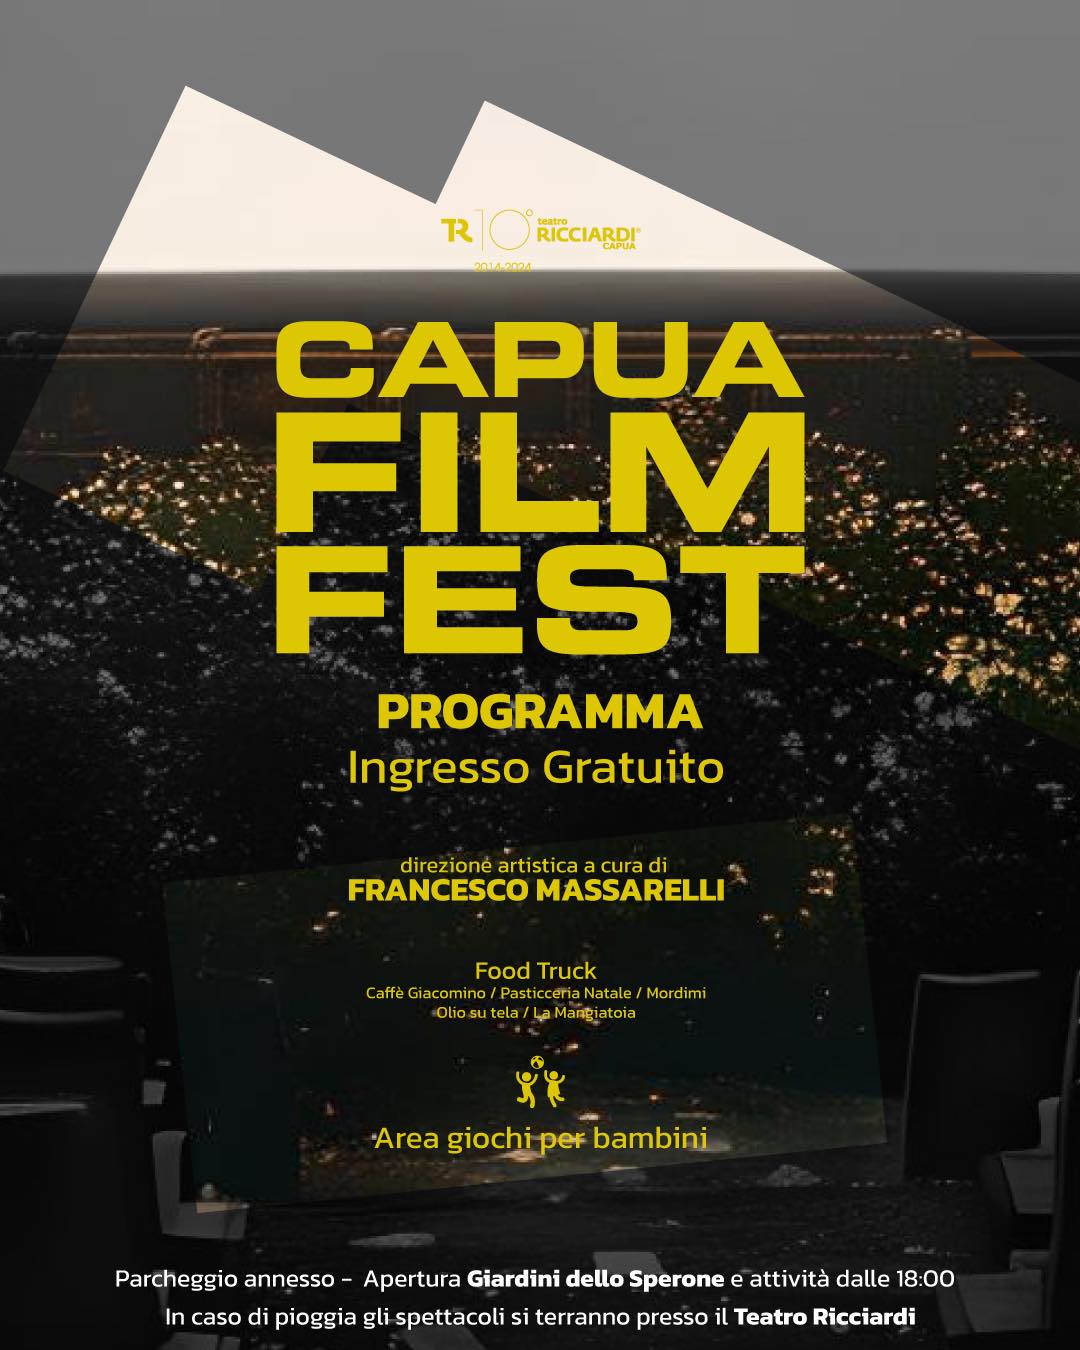 film fest CAPUA, TERZA EDIZIONE DEL CAPUA CINE FEST: IL PROGRAMMA COMPLETO